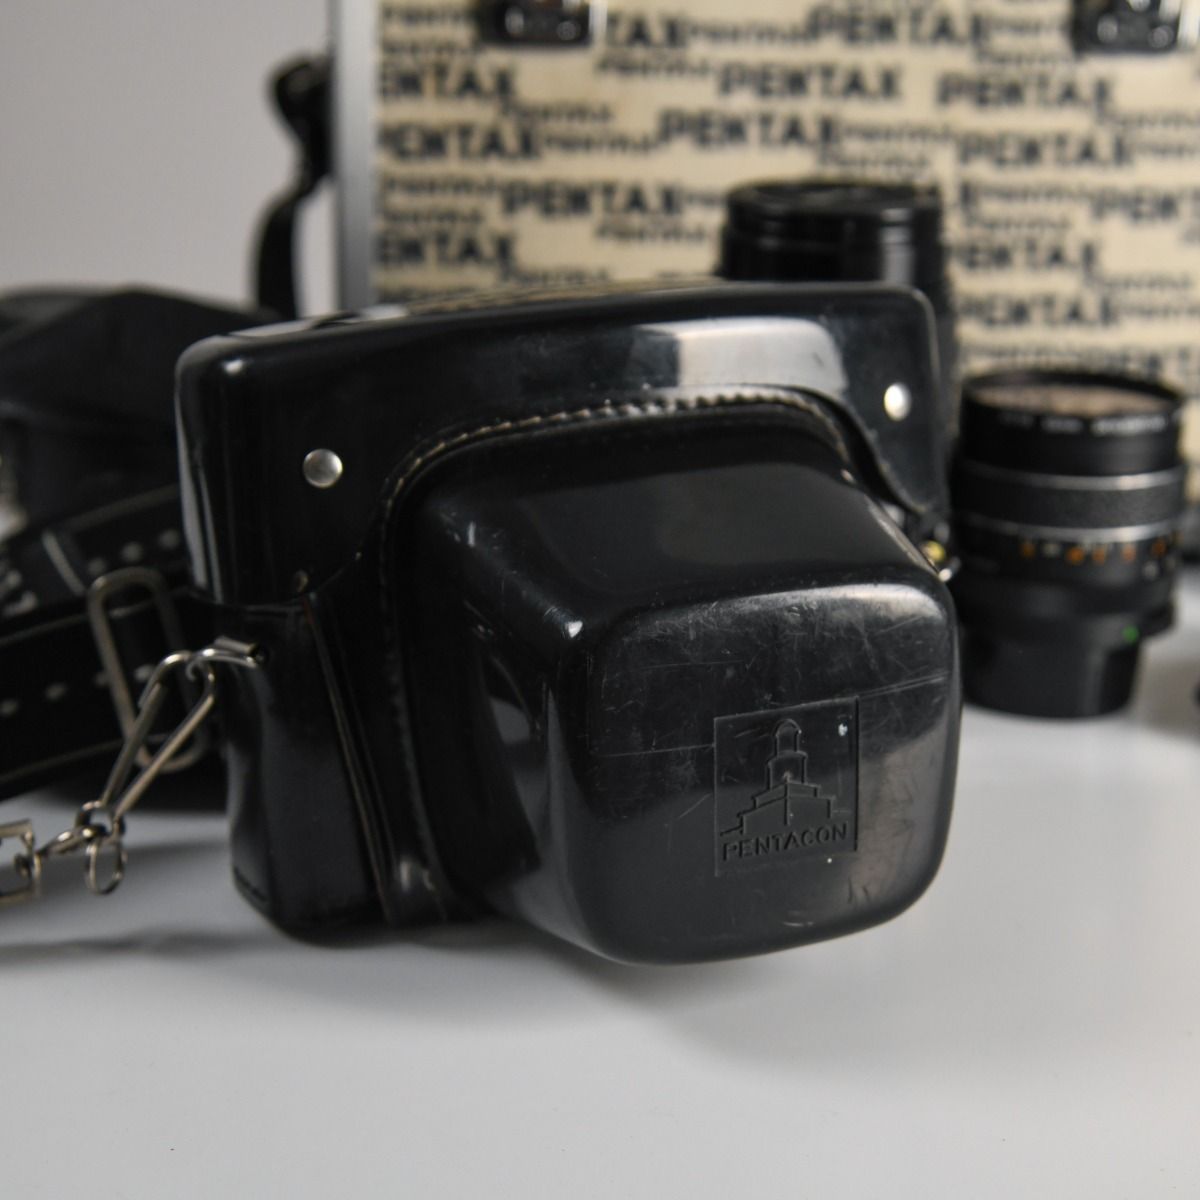 Praktica LTL 3 35mm SLR Film Camera Kit With Case and 3 Lenses